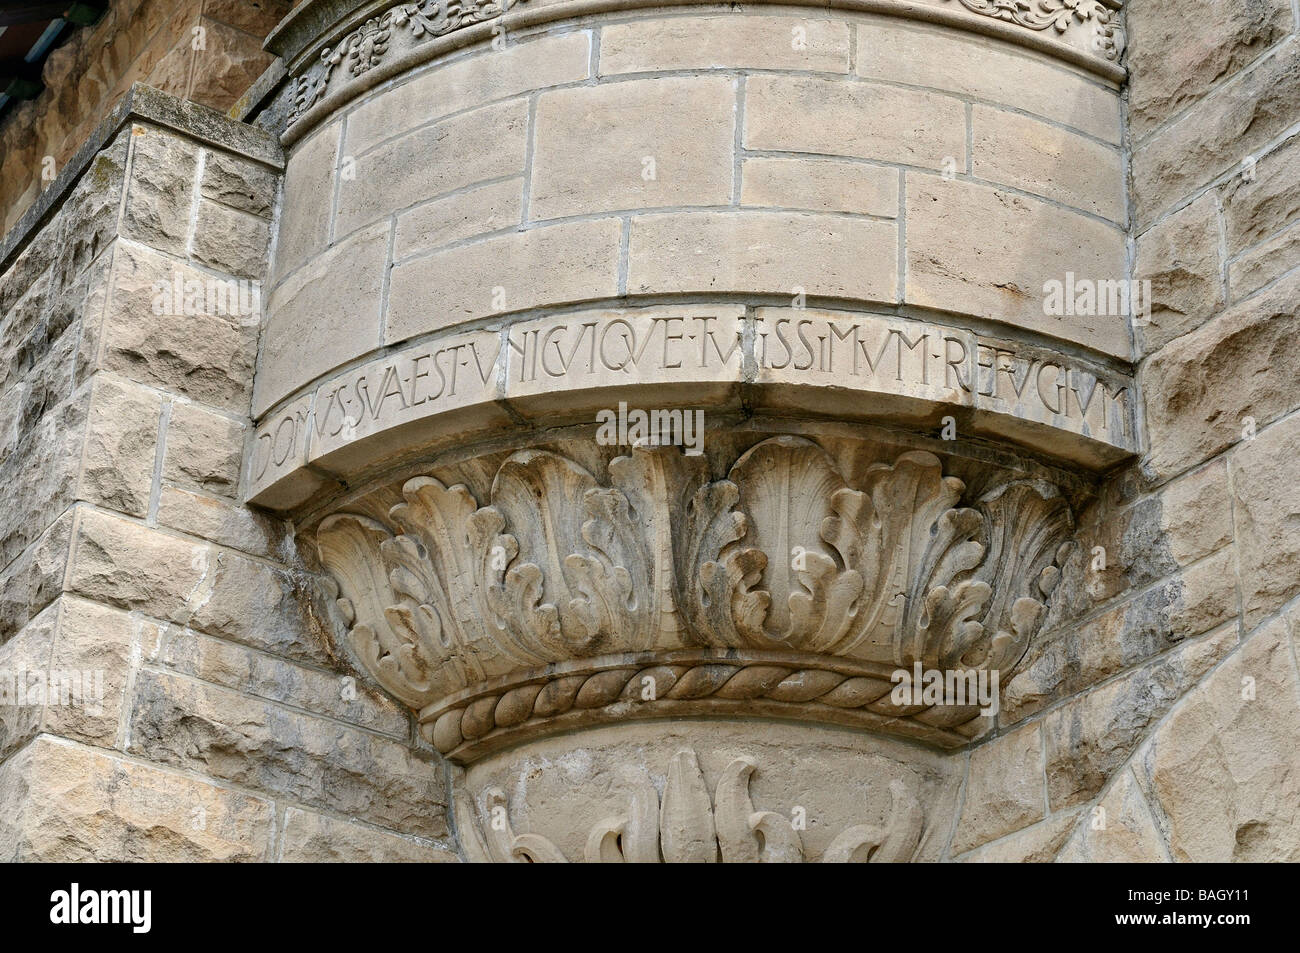 Latin quote Veni, vidi, vici on stone background, 3d